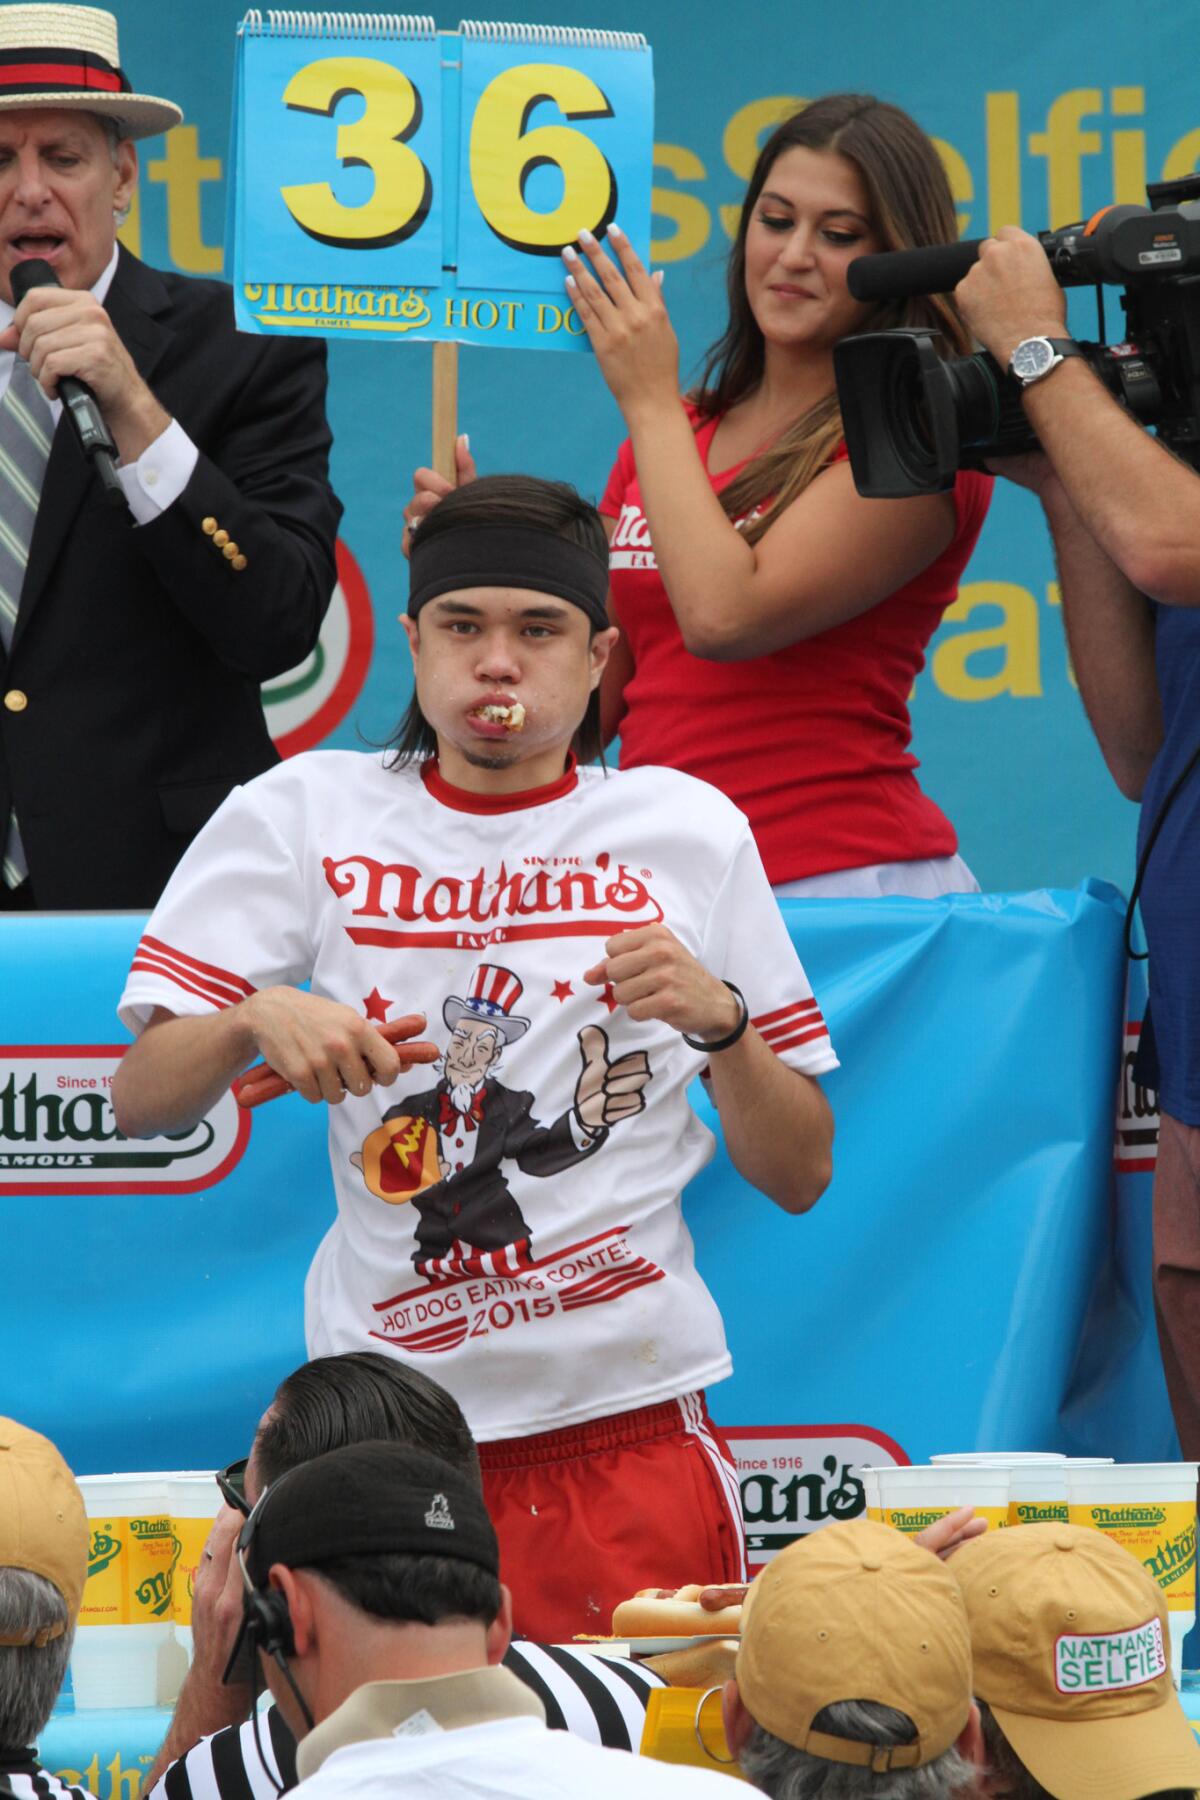 Matt Stonie compite en el Concurso Anual de Comedores de Hot Dogs del 4 de Julio el sábado 4 de julio de 2015 en Coney Island, Nueva York. Stonie ganó al comer 62 hot dogs en 10 minutos.